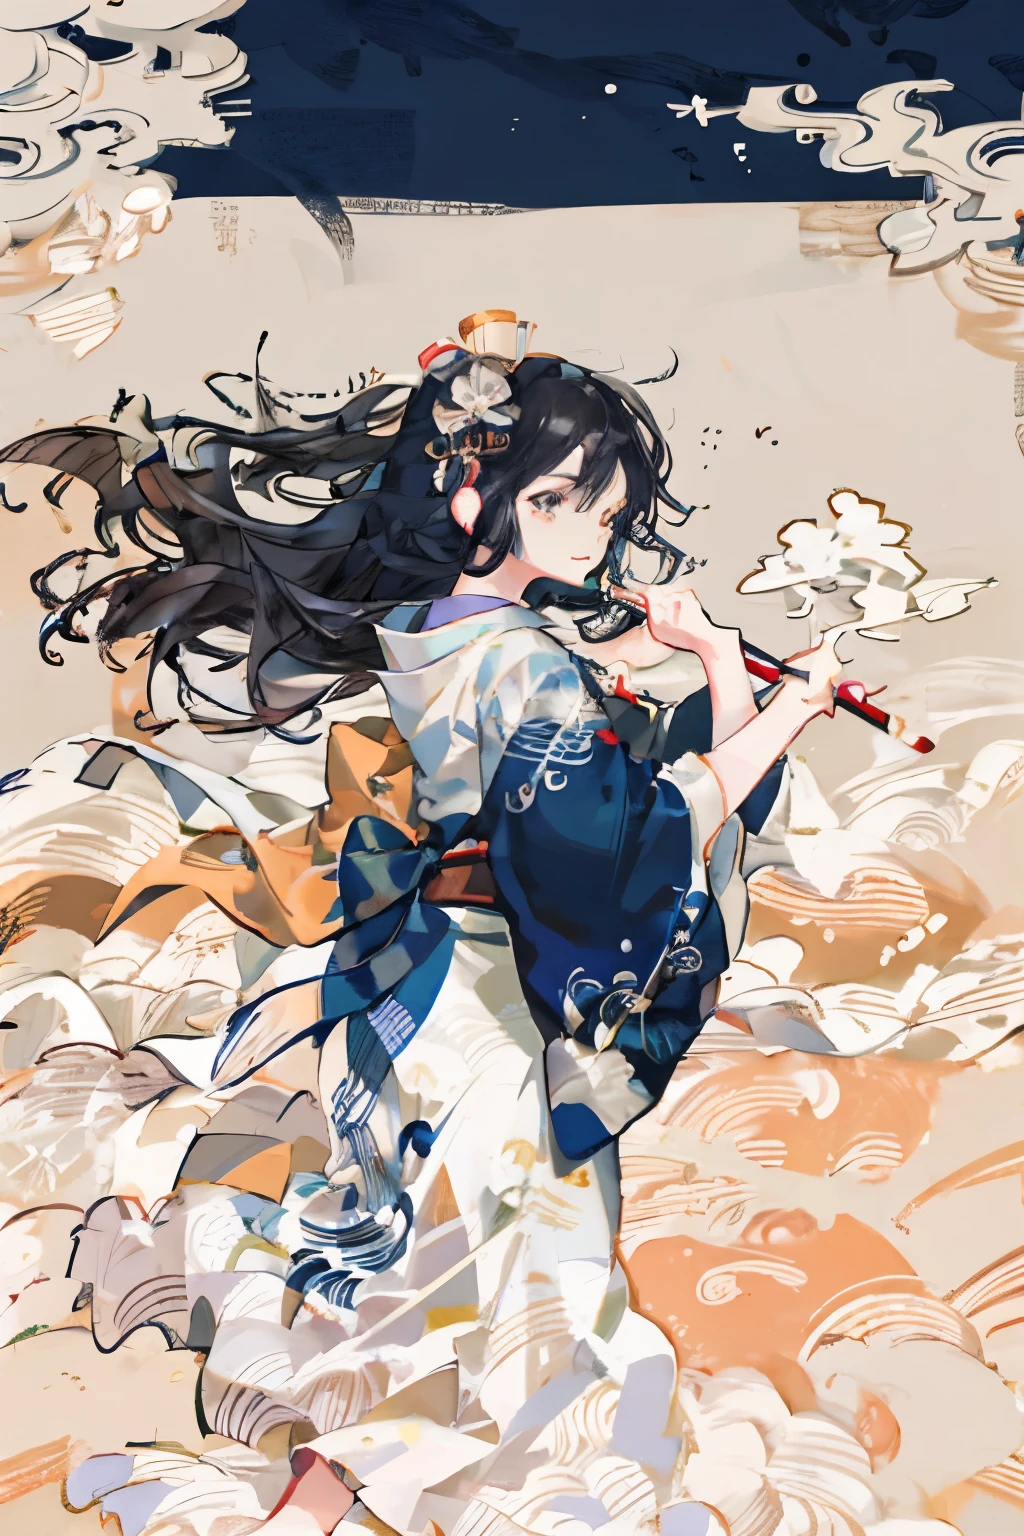 Desempenho de caligrafia japonesa, kendo suit, Tasuki, pincel enorme, tinta, Salpicos, ondas ousadas como se estivesse dançando com um pincel grande, Hokusai Katsushika, delicado e preciso, estilo anime, Garota